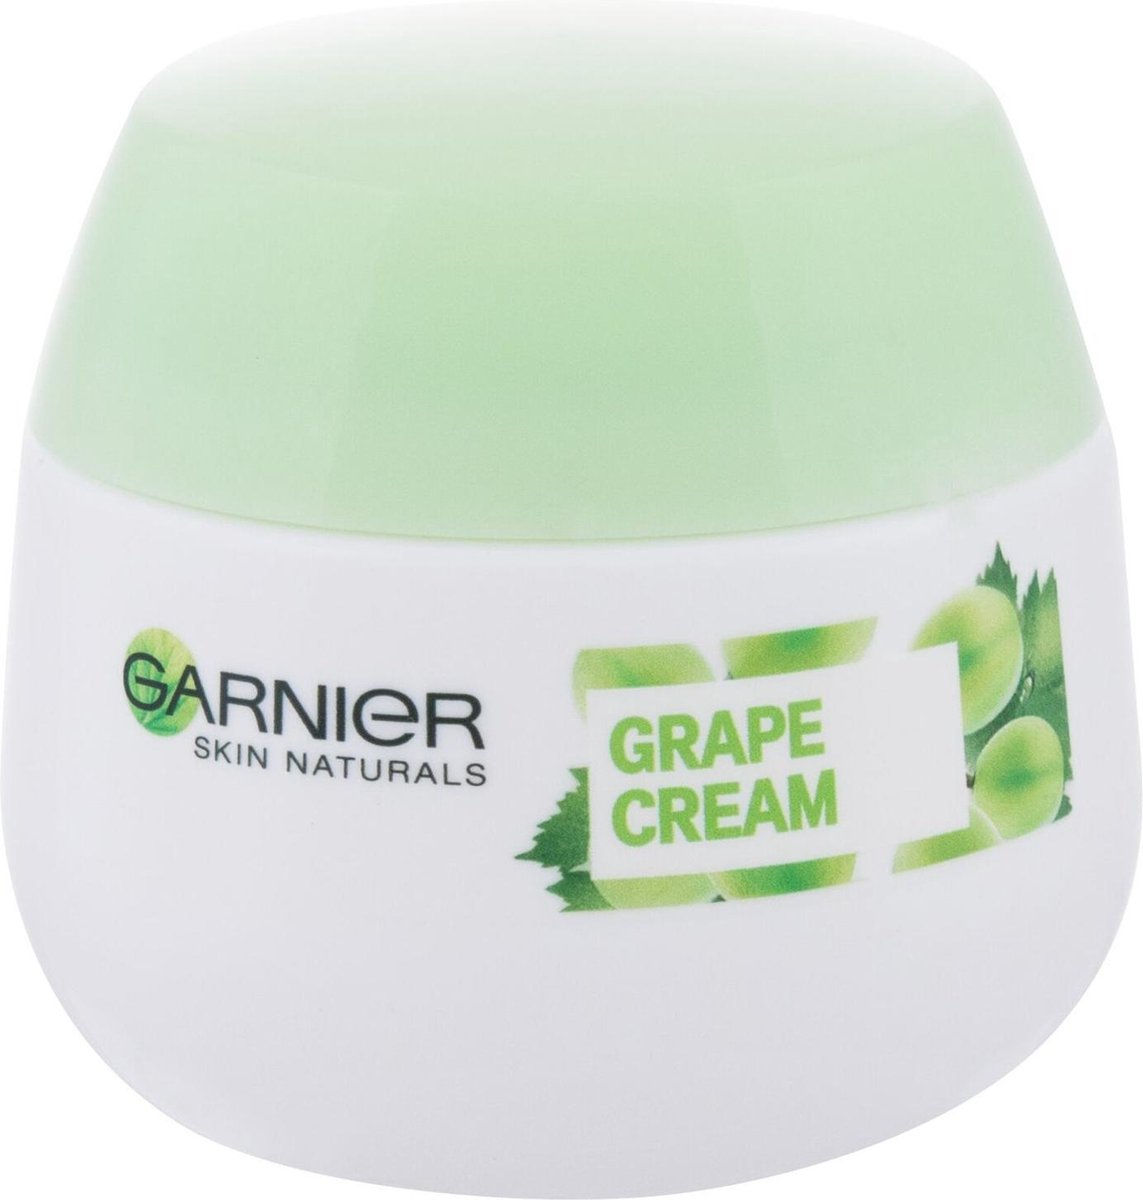 GARNIER - 24h Moisturizer for Normal Skin Essentials 50 ml - 50ml